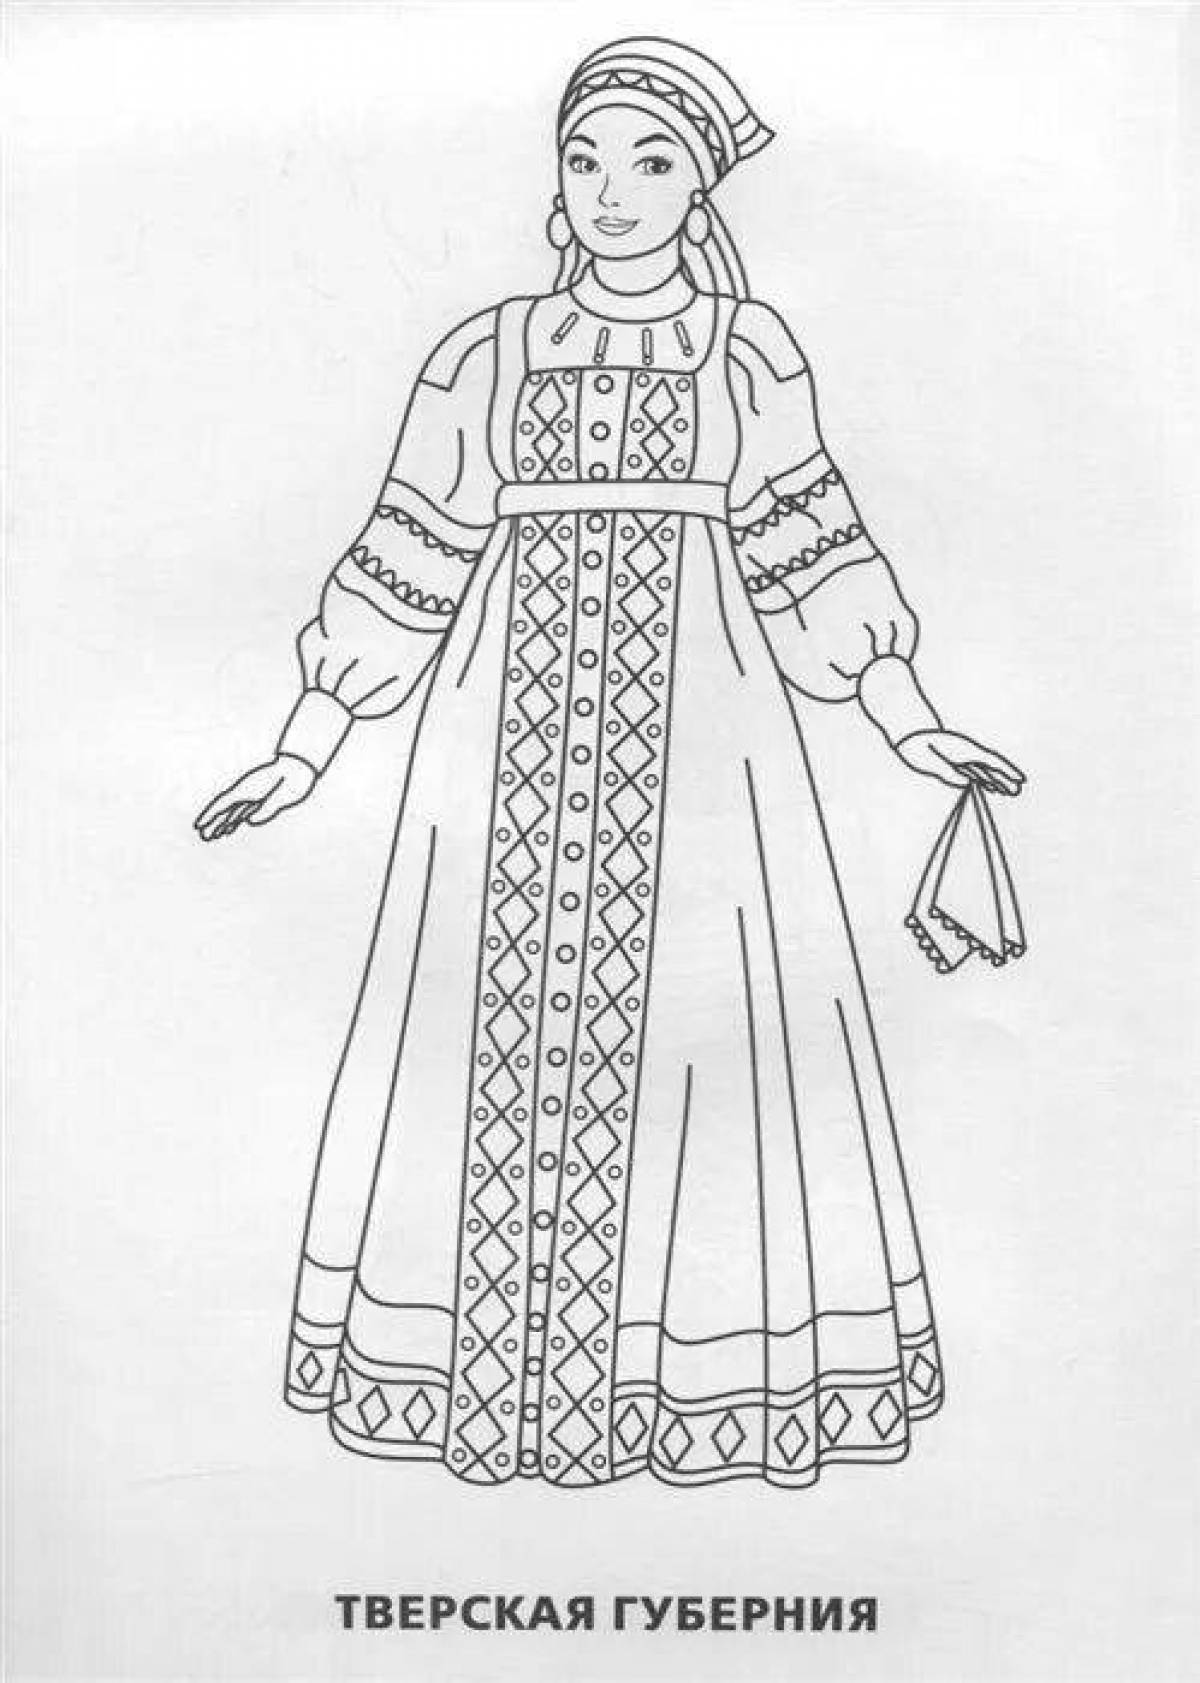 Декоративный русский женский народный костюм